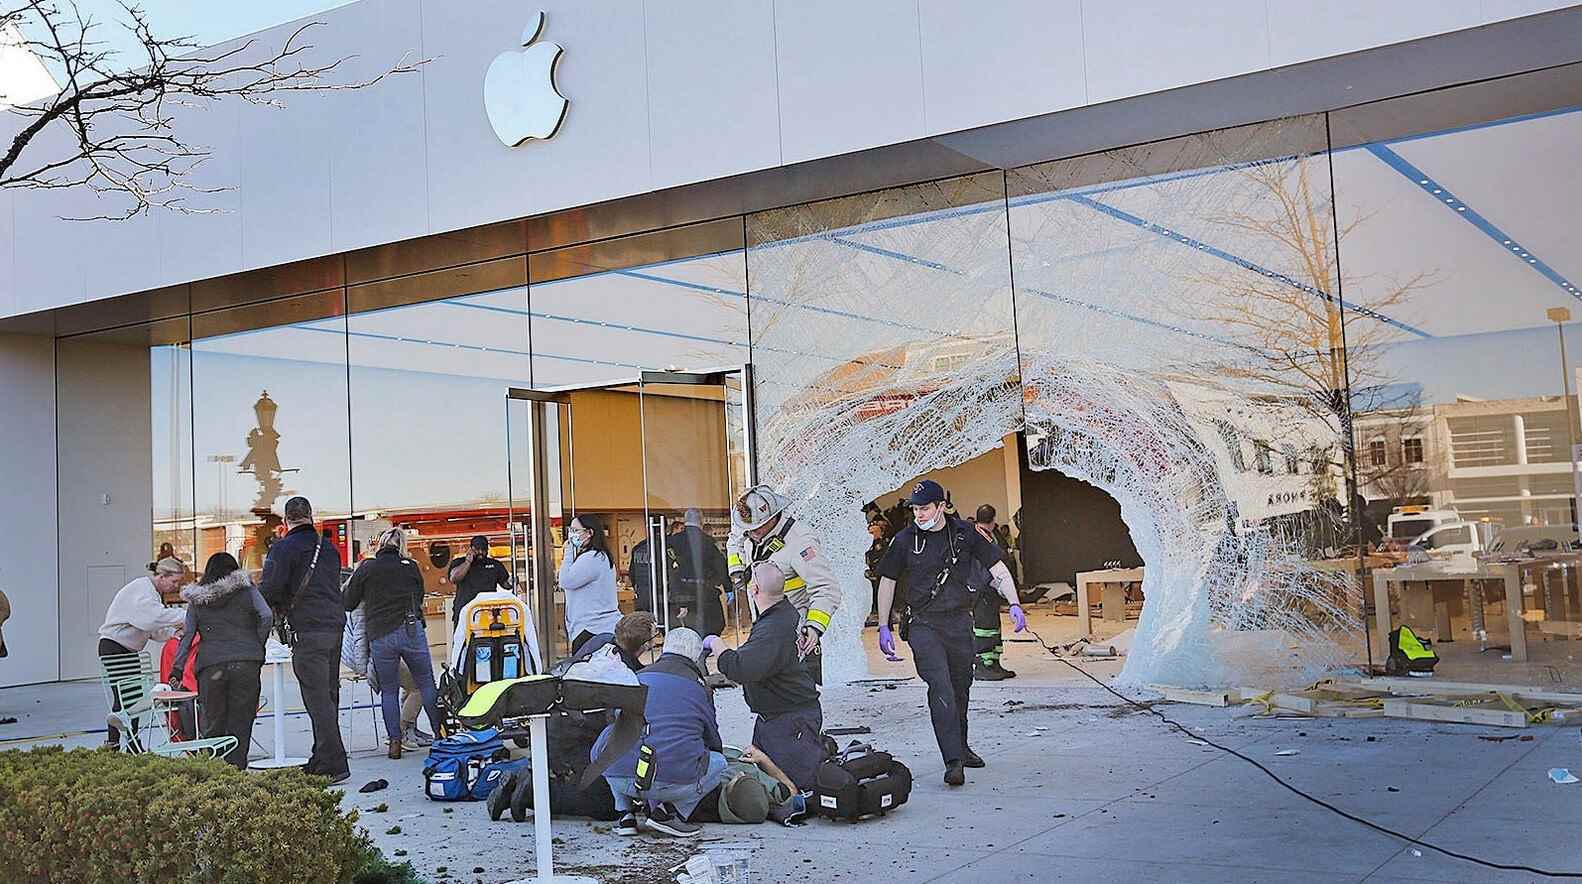 Derby Street Shops Apple Store'da bir aracın ön camdan girmesinden sonraki kaotik sahne - Massachusetts'te bir SUV'un Apple Store'a girmesiyle ortaya çıkan korkunç manzara 1 kişi öldü, 19 kişi yaralandı